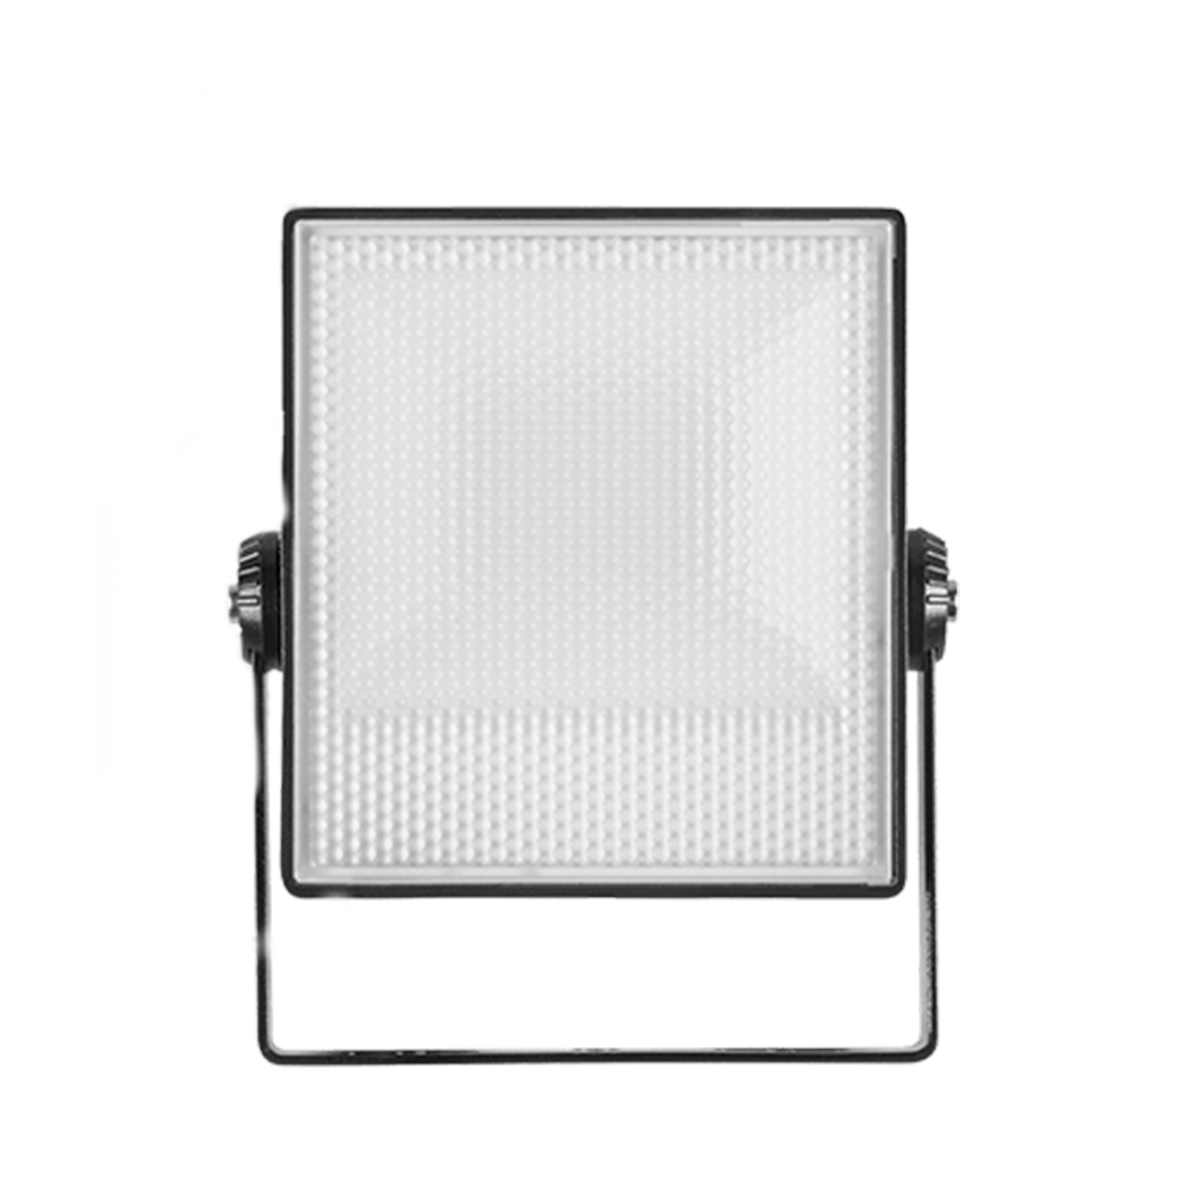 Projetor LED 10W Stella - Bivolt - Cor 3000k Branco Quente - 800 Lumens - Vertical - Preto - STH7741/30